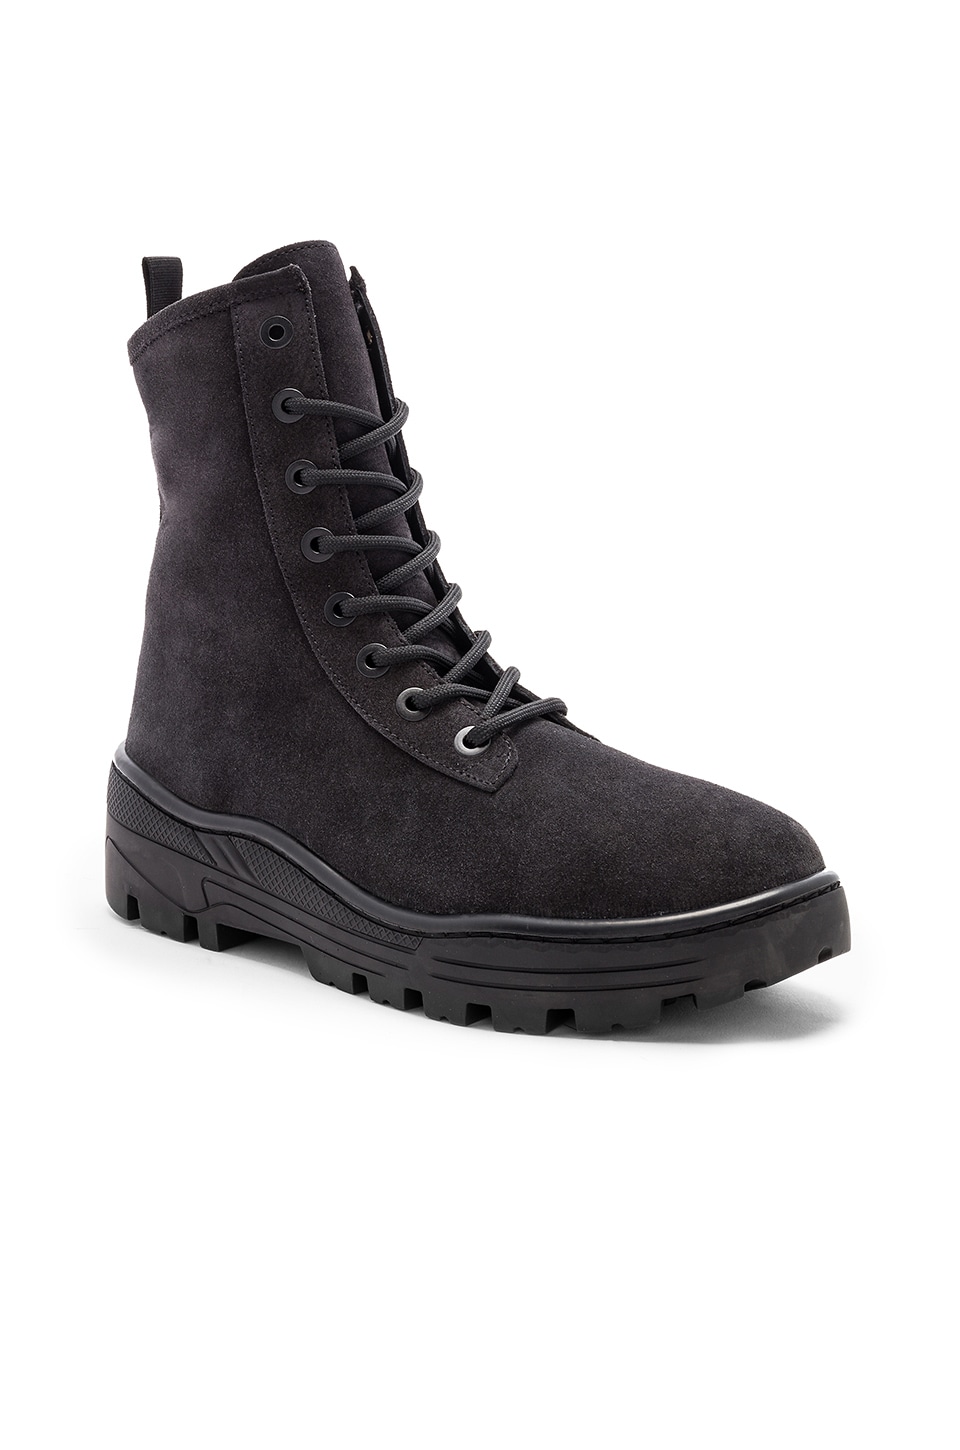 yeezy boots graphite